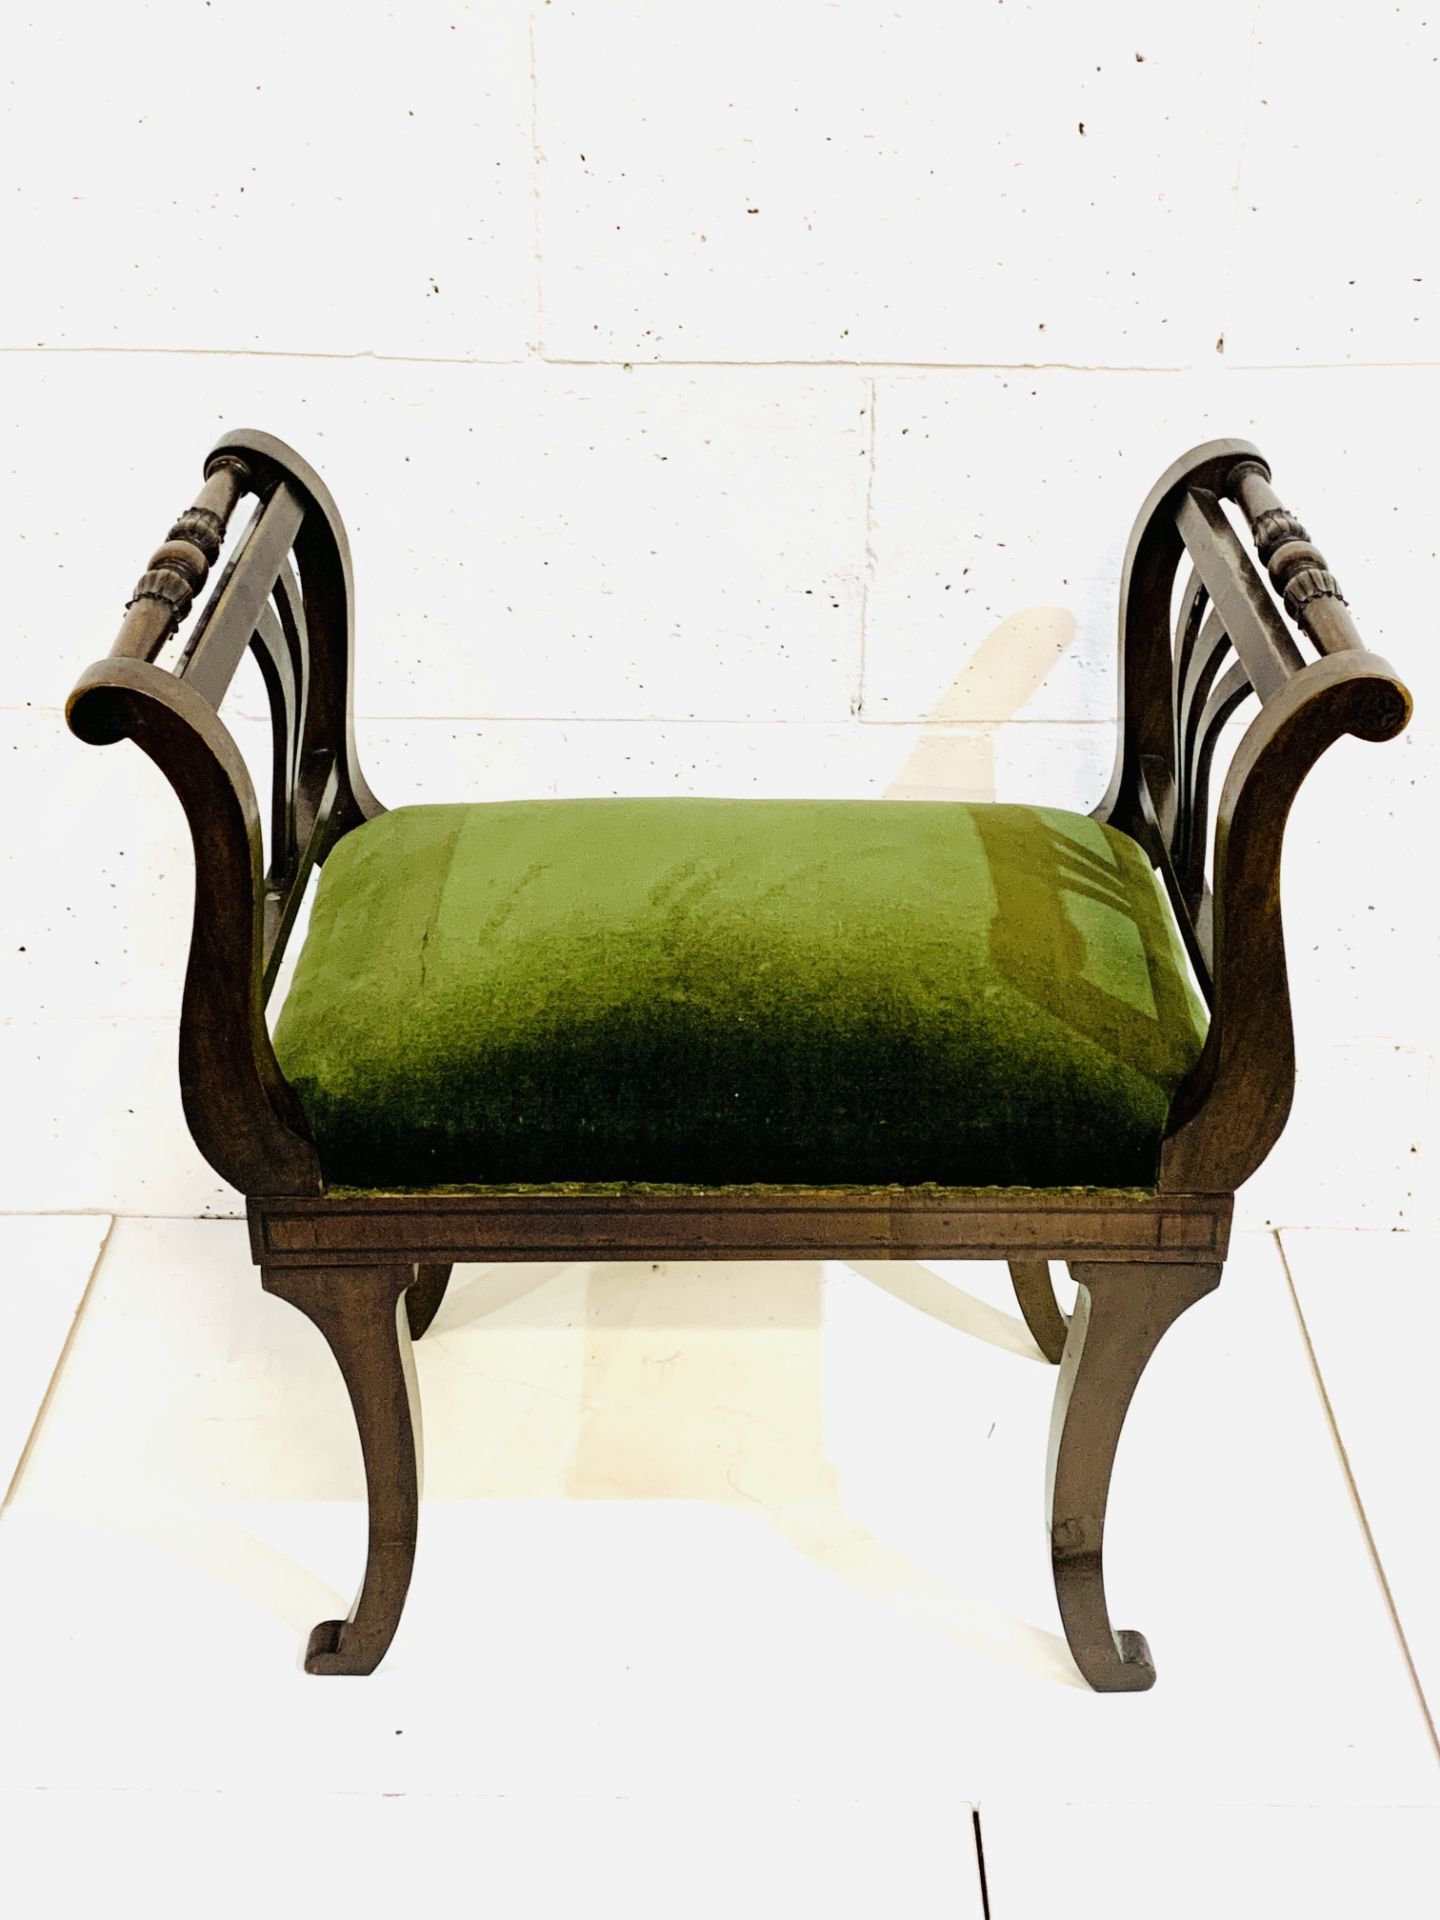 Mahogany Empire style stool with green velvet cushion. - Image 4 of 4